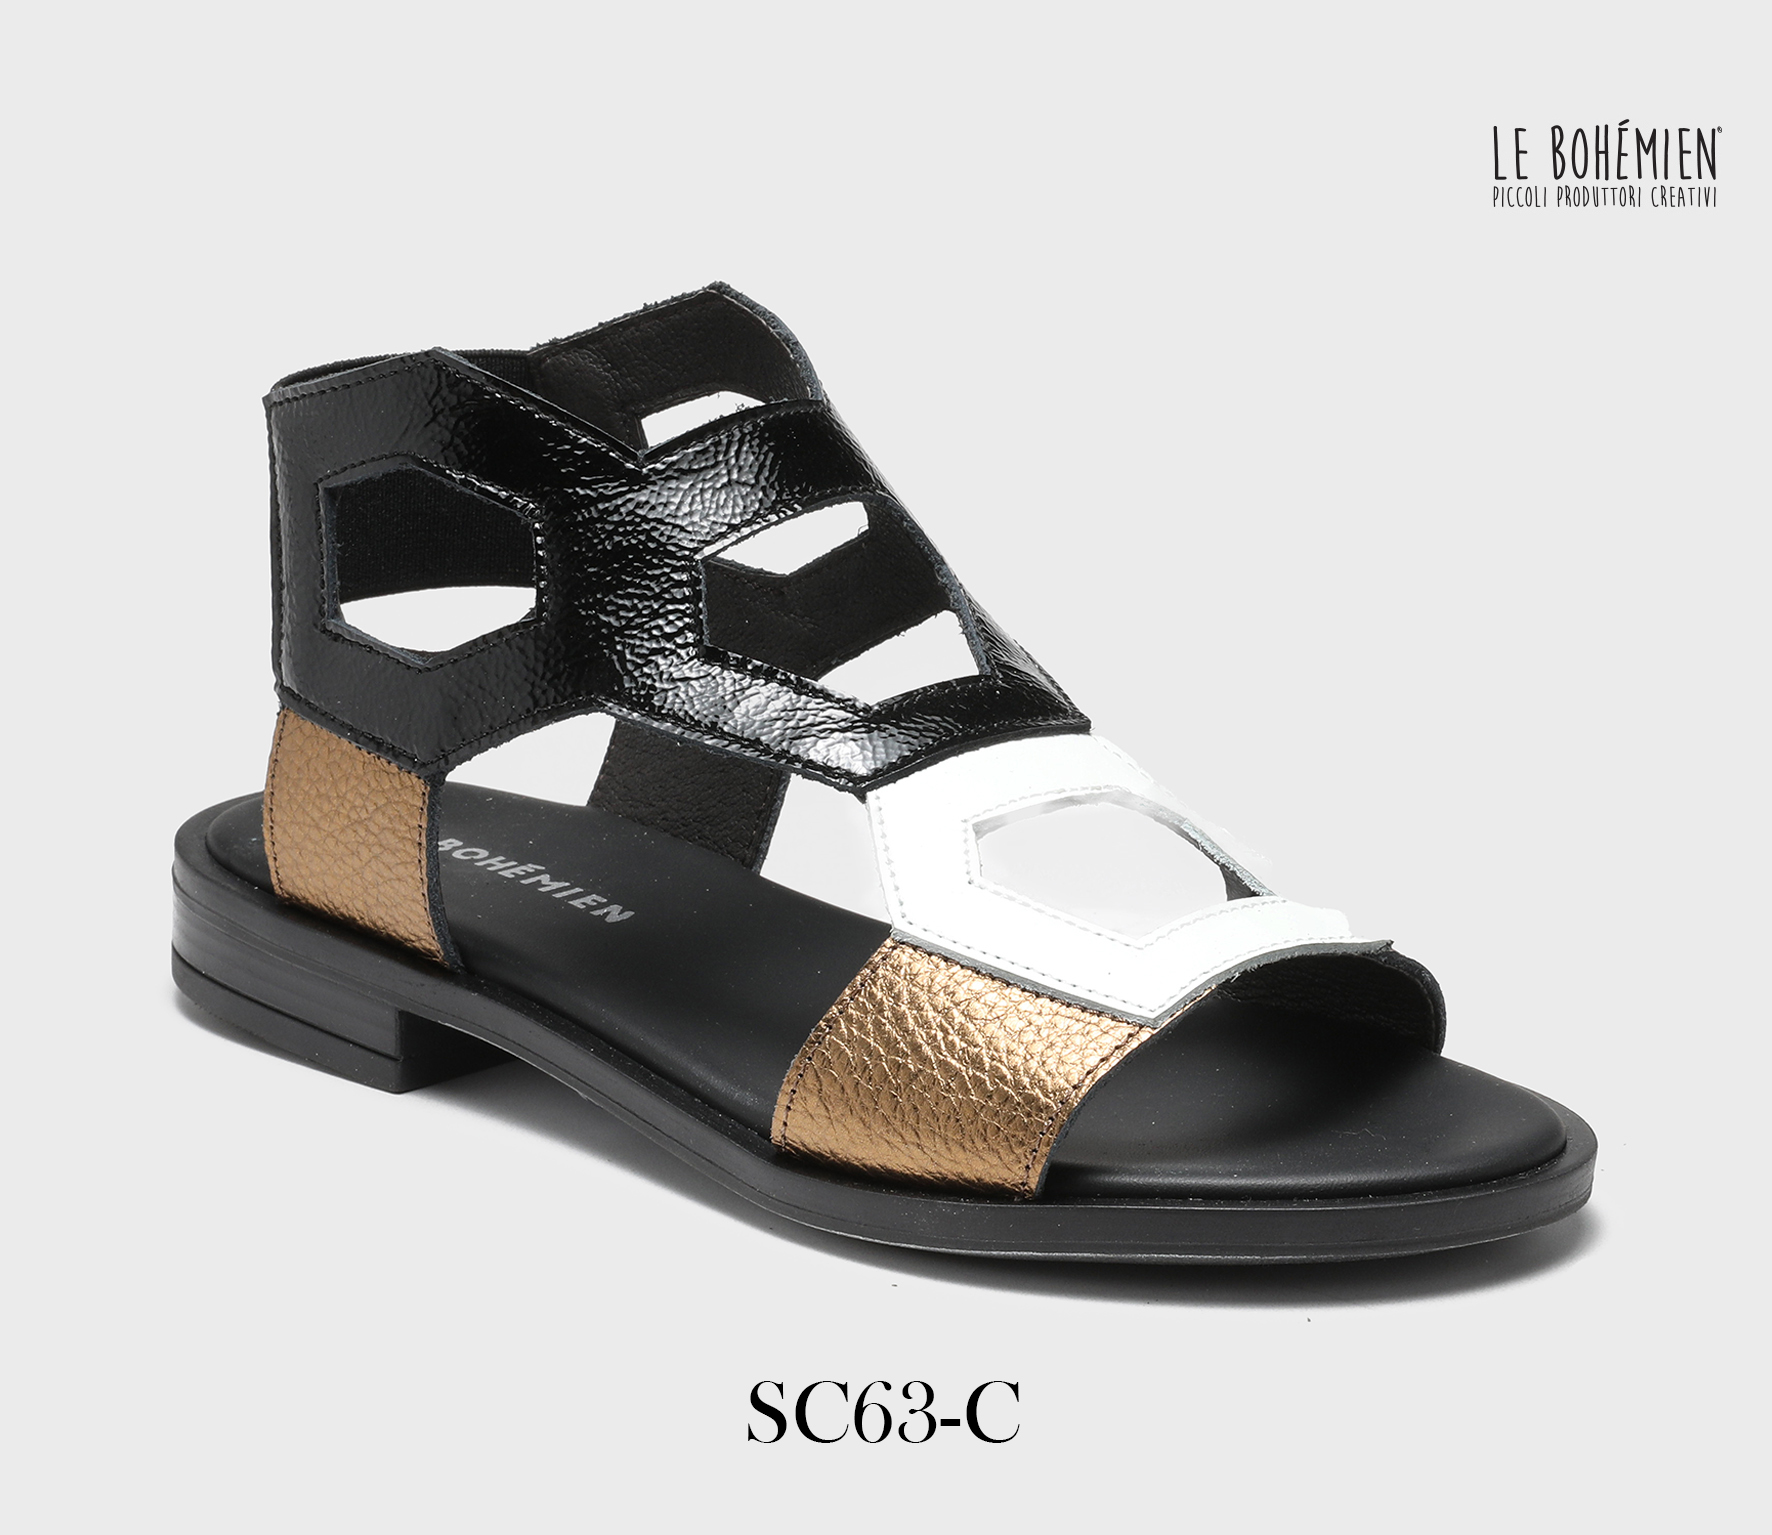 Shoes Sandals for Women SC63-C